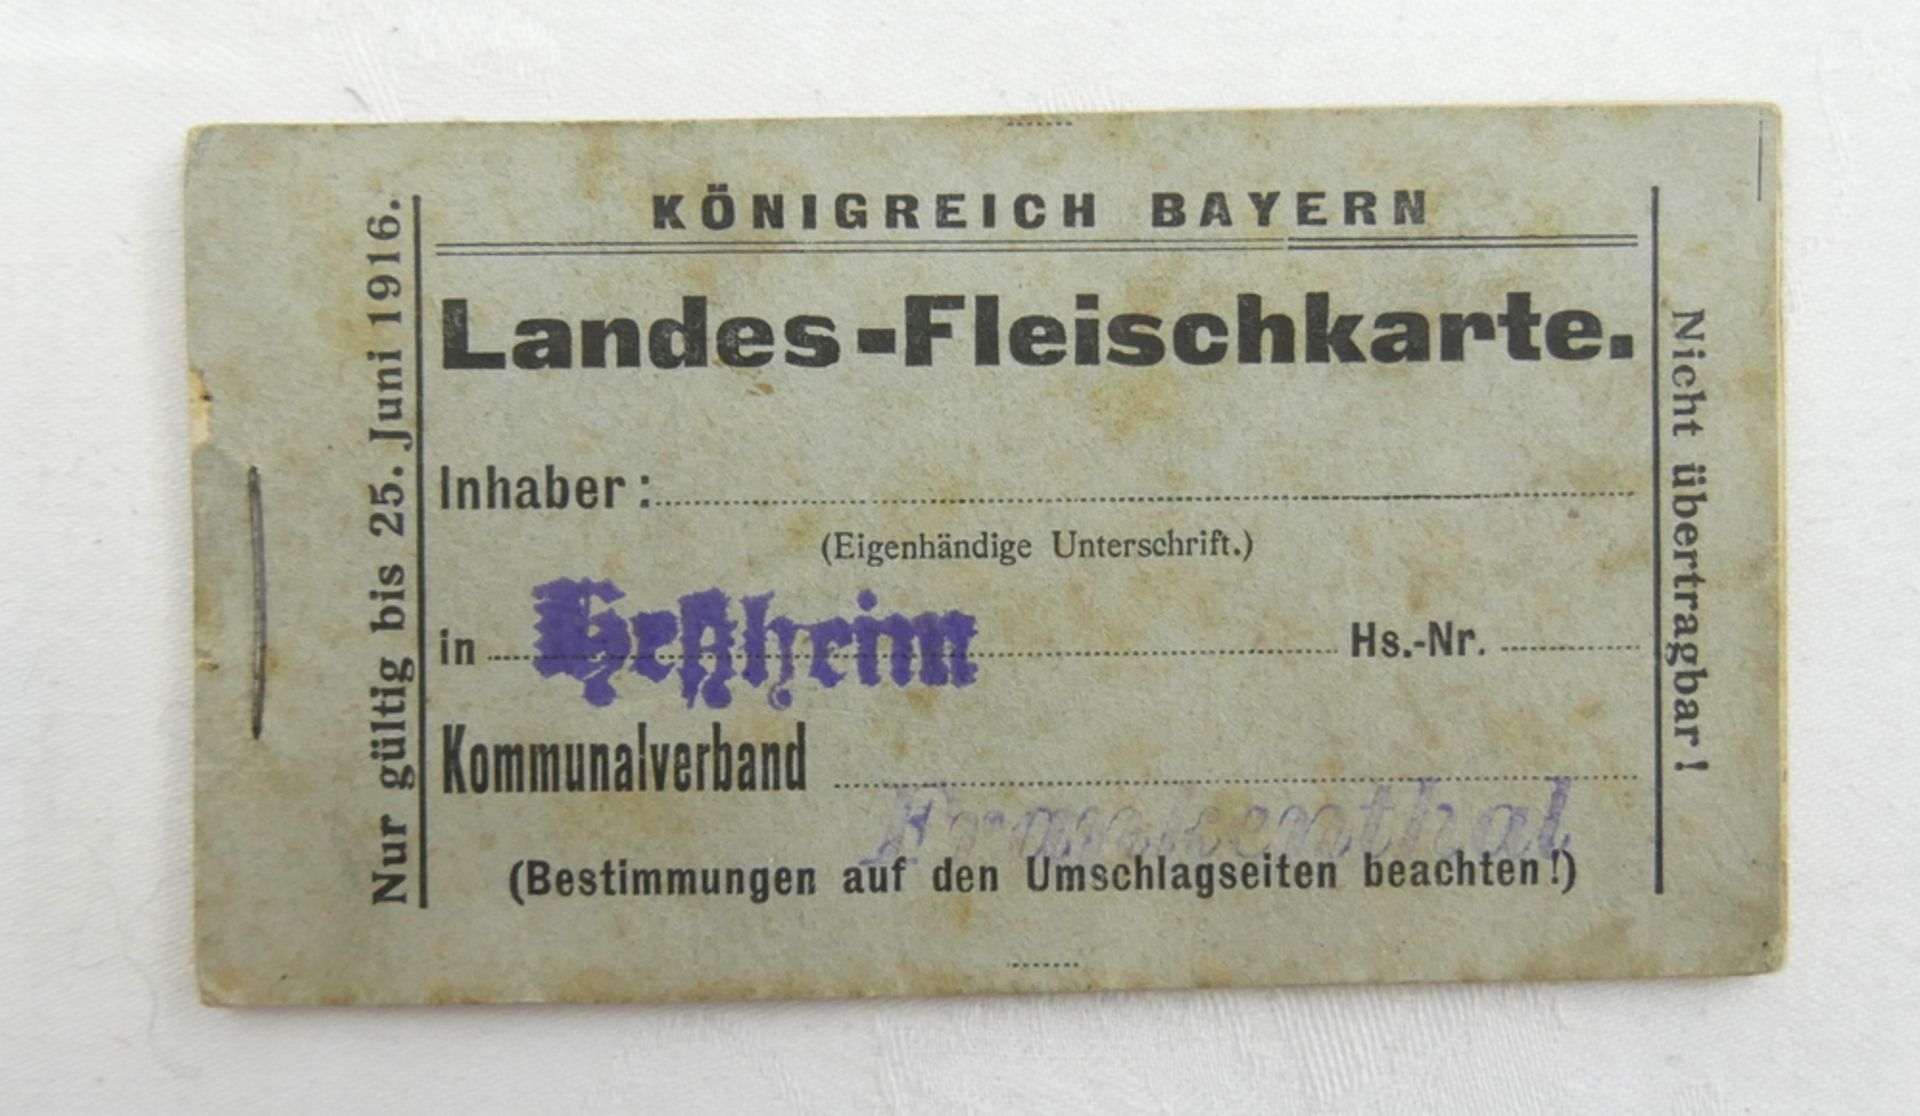 Königreich Bayern, Landesfleichkarte, Fleisch-Bezugsheft, noch komplett. Heßheim Komunalverband